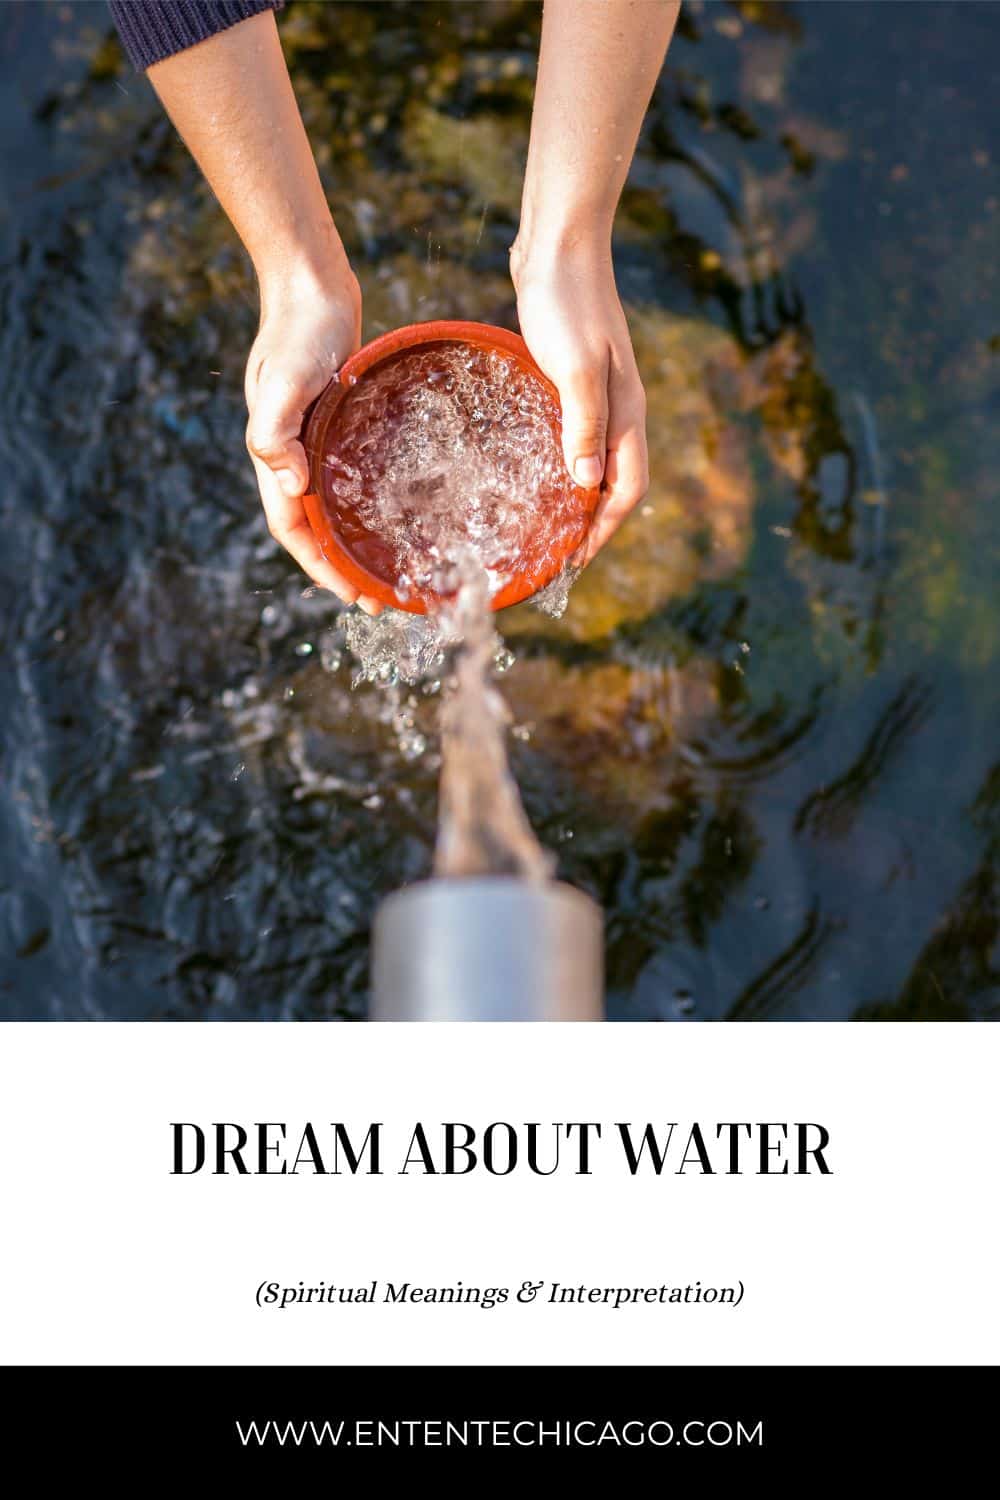 10 Top Water Dreams & Their Meanings